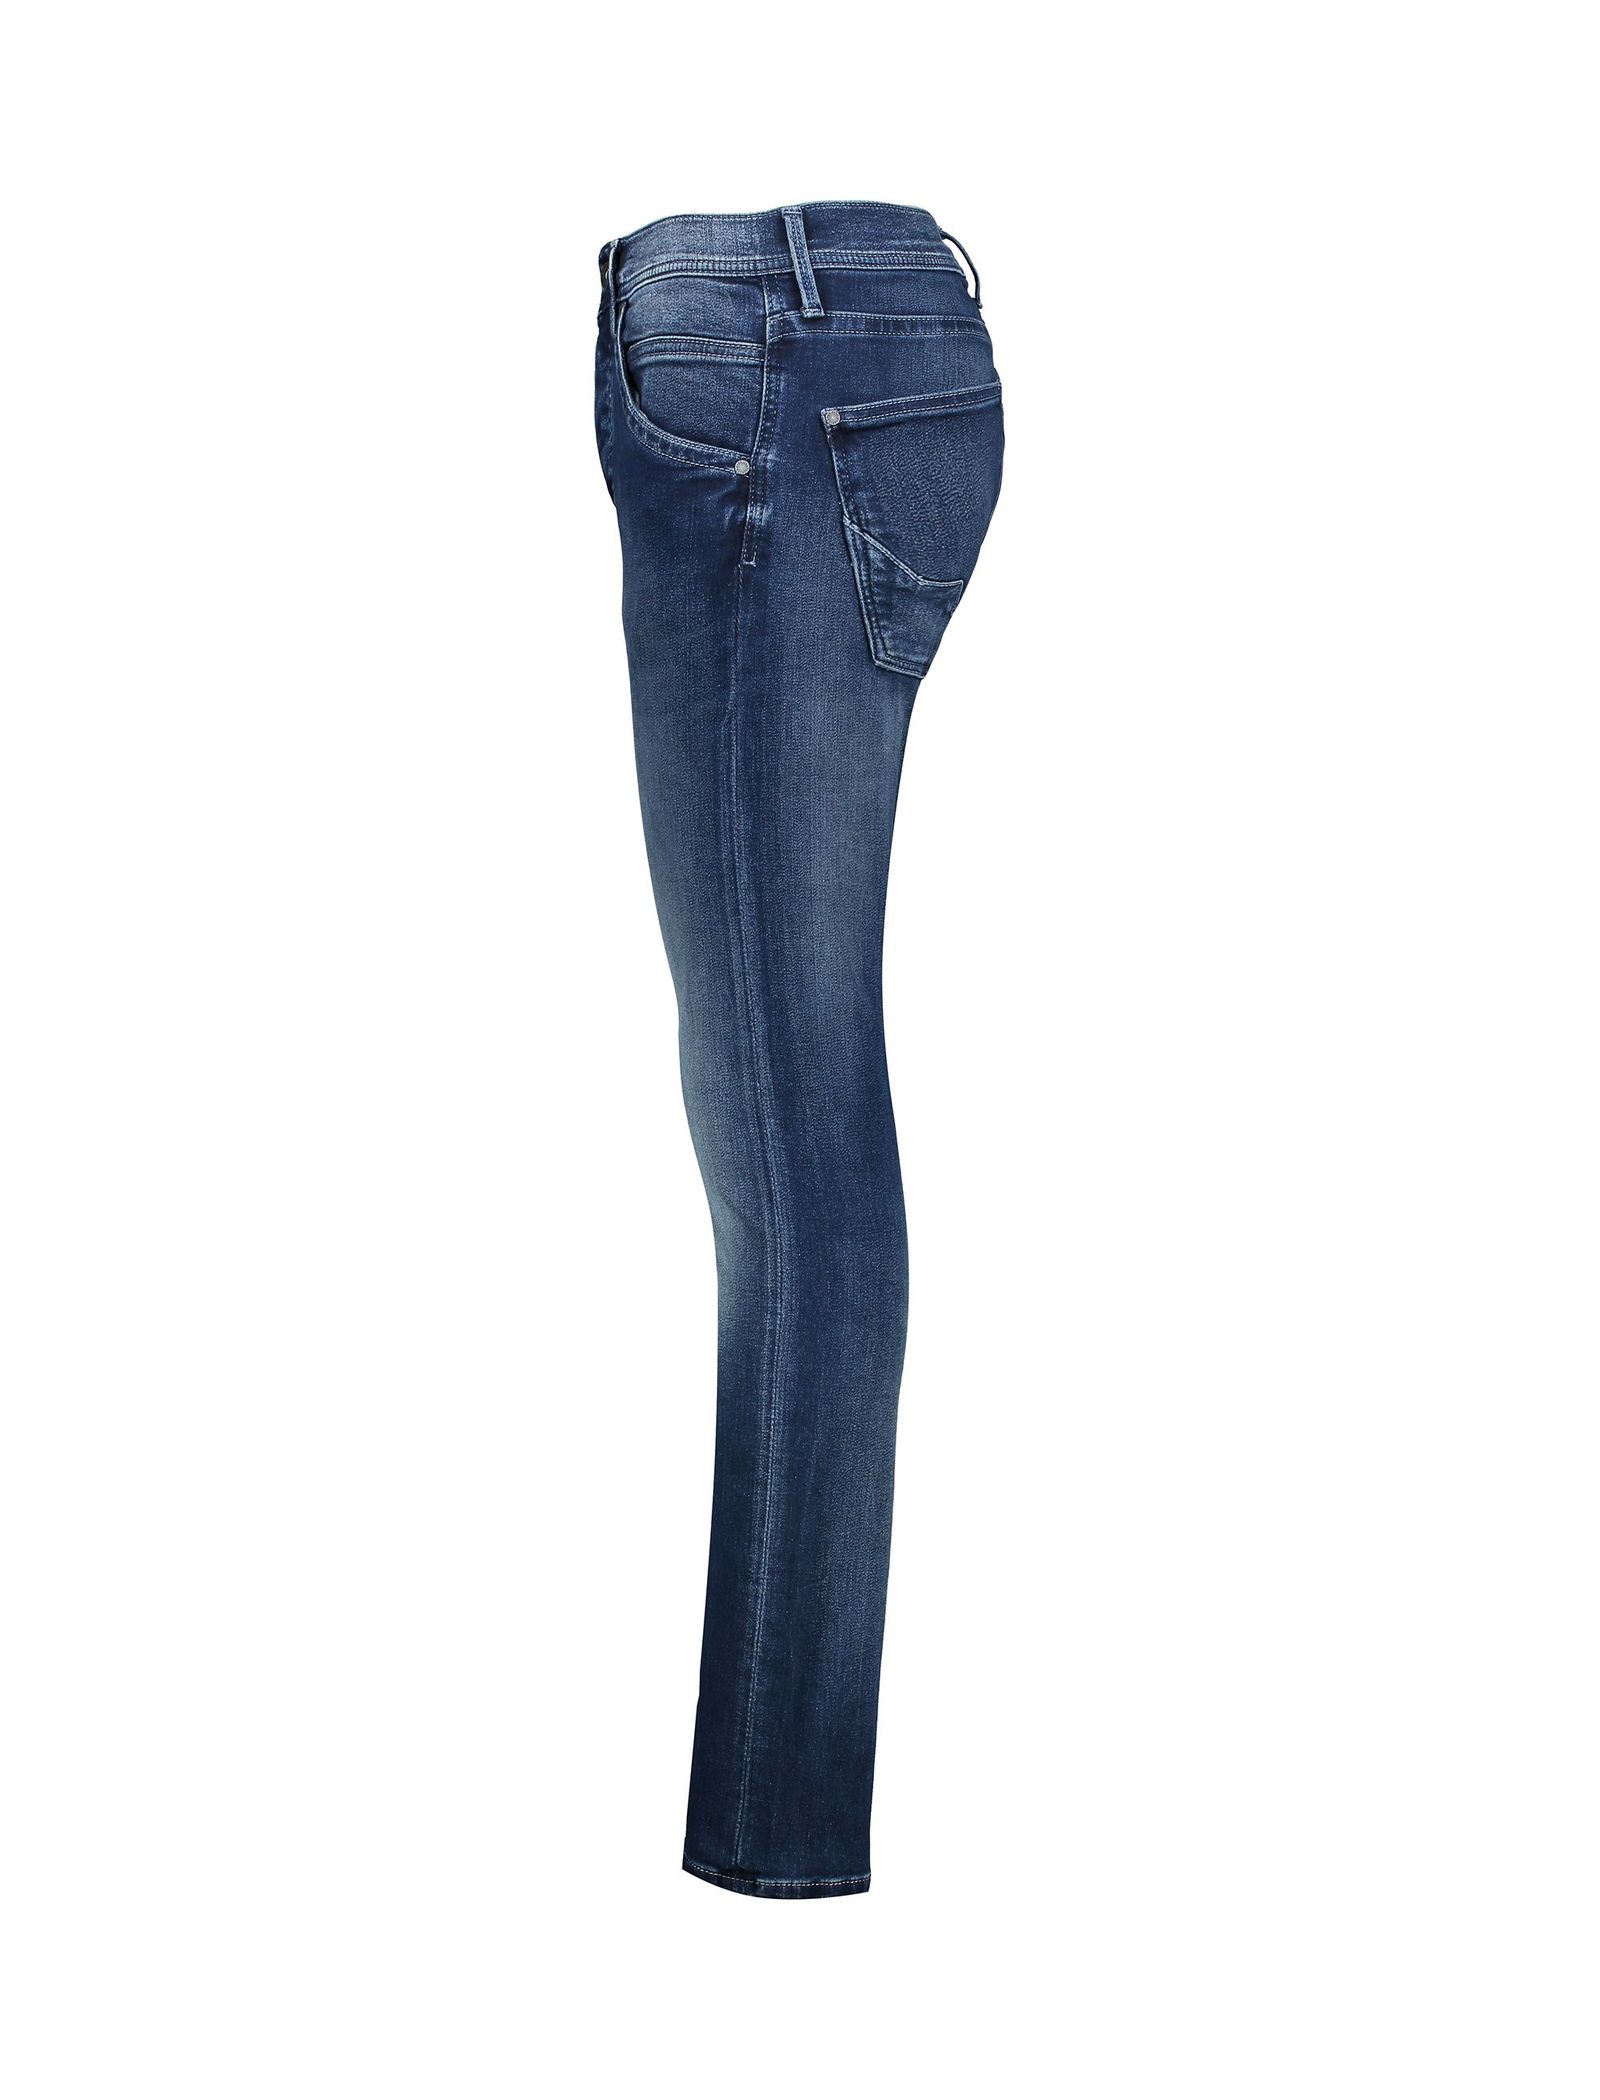 شلوار جین راسته مردانه TRACK - پپه جینز - آبي تيره - 4